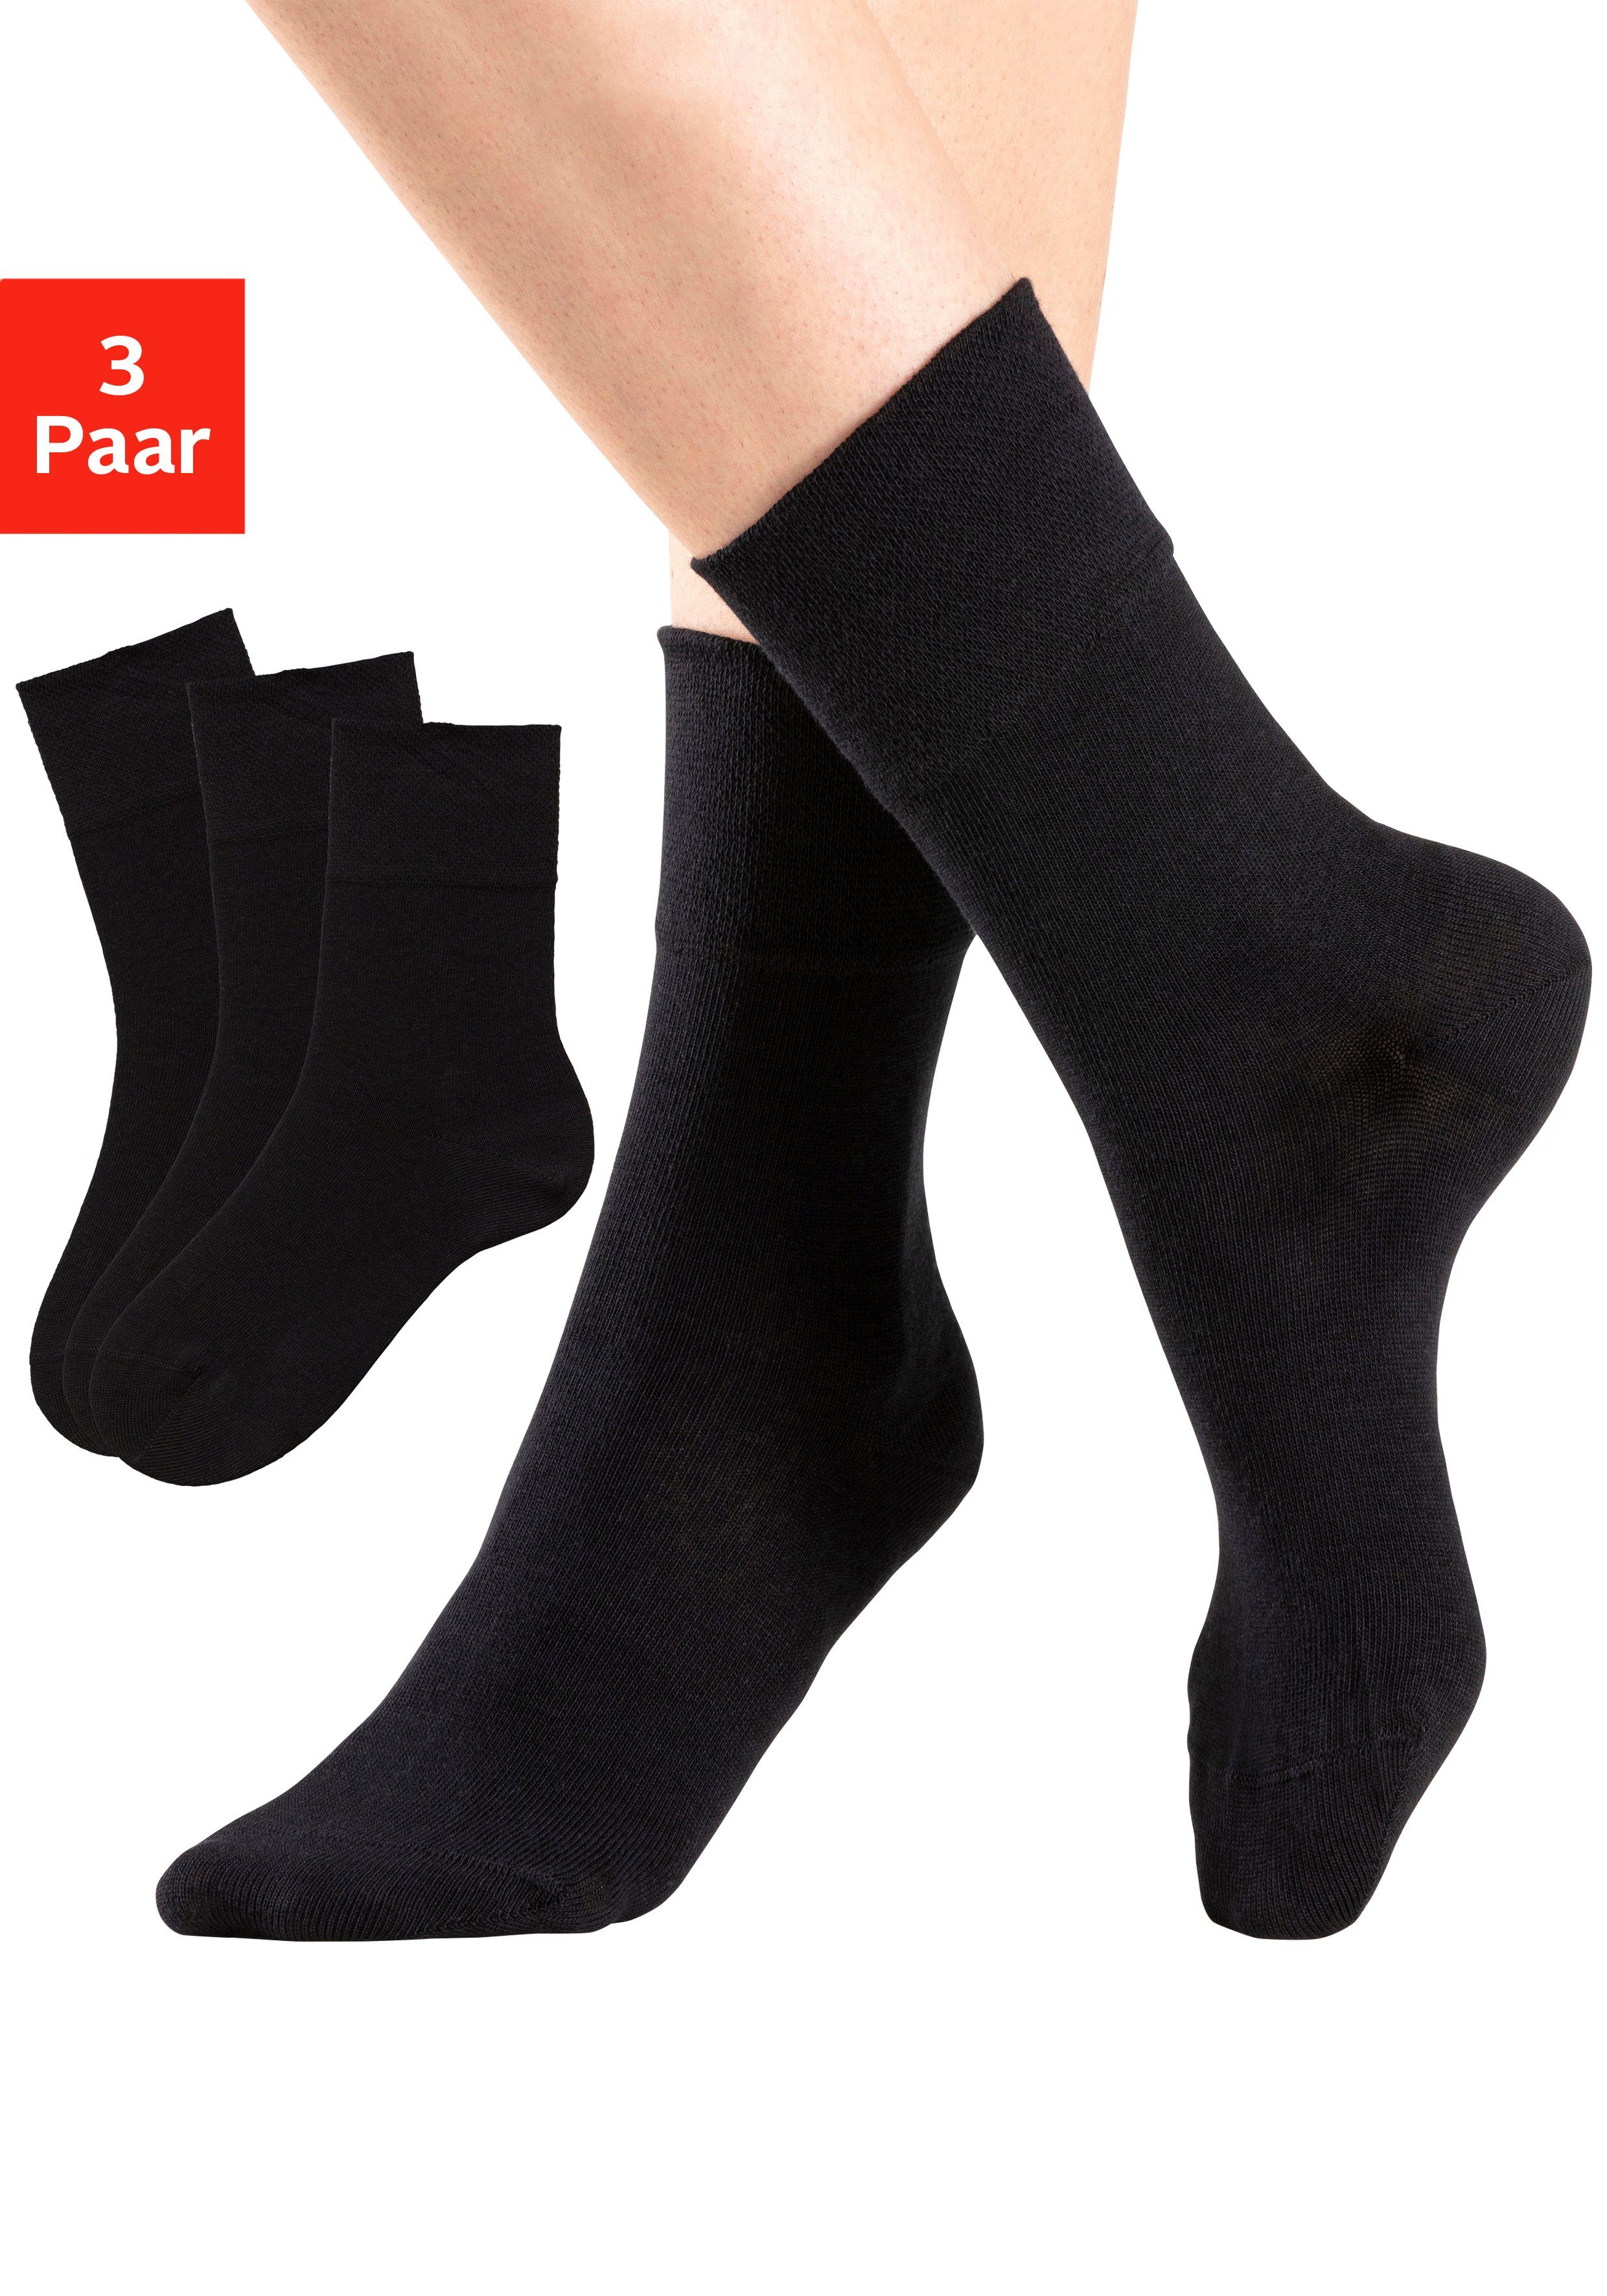 H.I.S Socken (3-Paar) mit Komfortbund auch für Diabetiker geeignet online  kaufen | OTTO